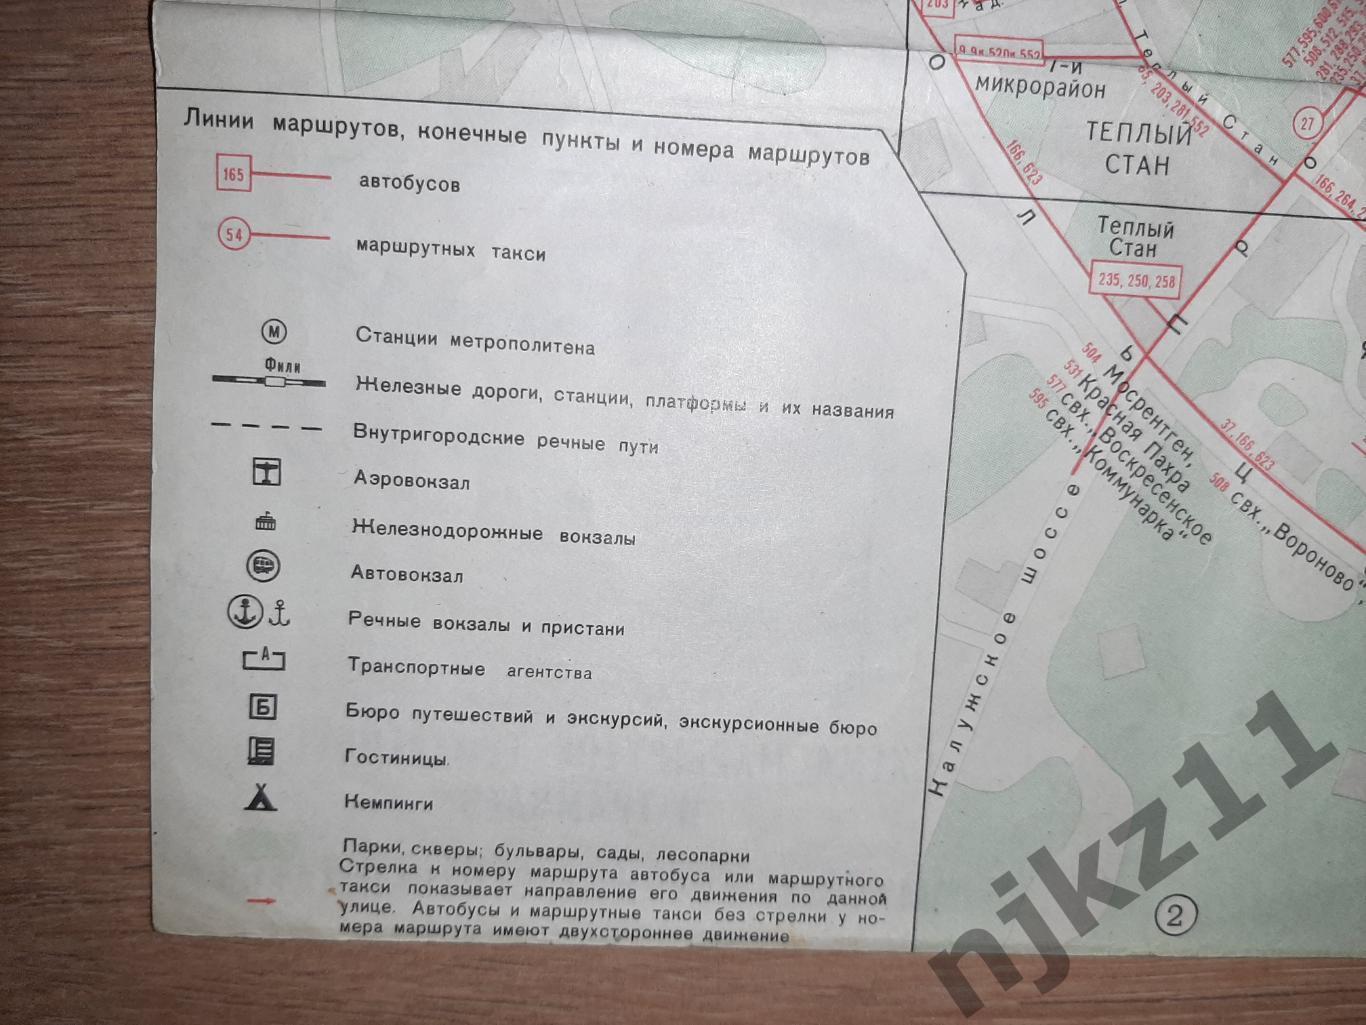 Карта Москва 1980+Зеленоград+схема движения пассажирского транспорта 79-80г.г. 3